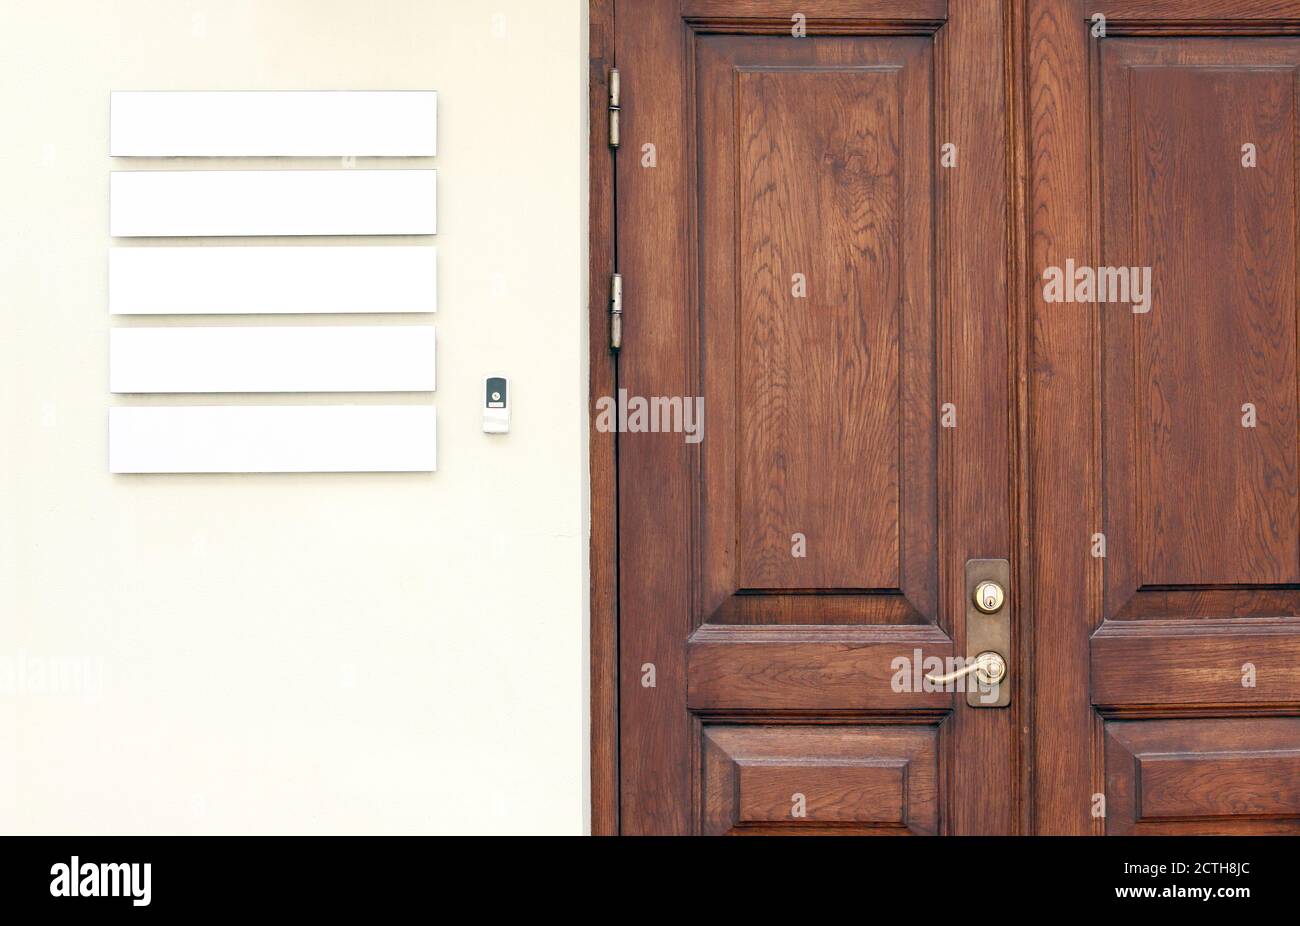 Classiche porte da ufficio in legno con cartelli vuoti sulla parete per posizionare nomi e loghi aziendali, mockup aziendale Foto Stock